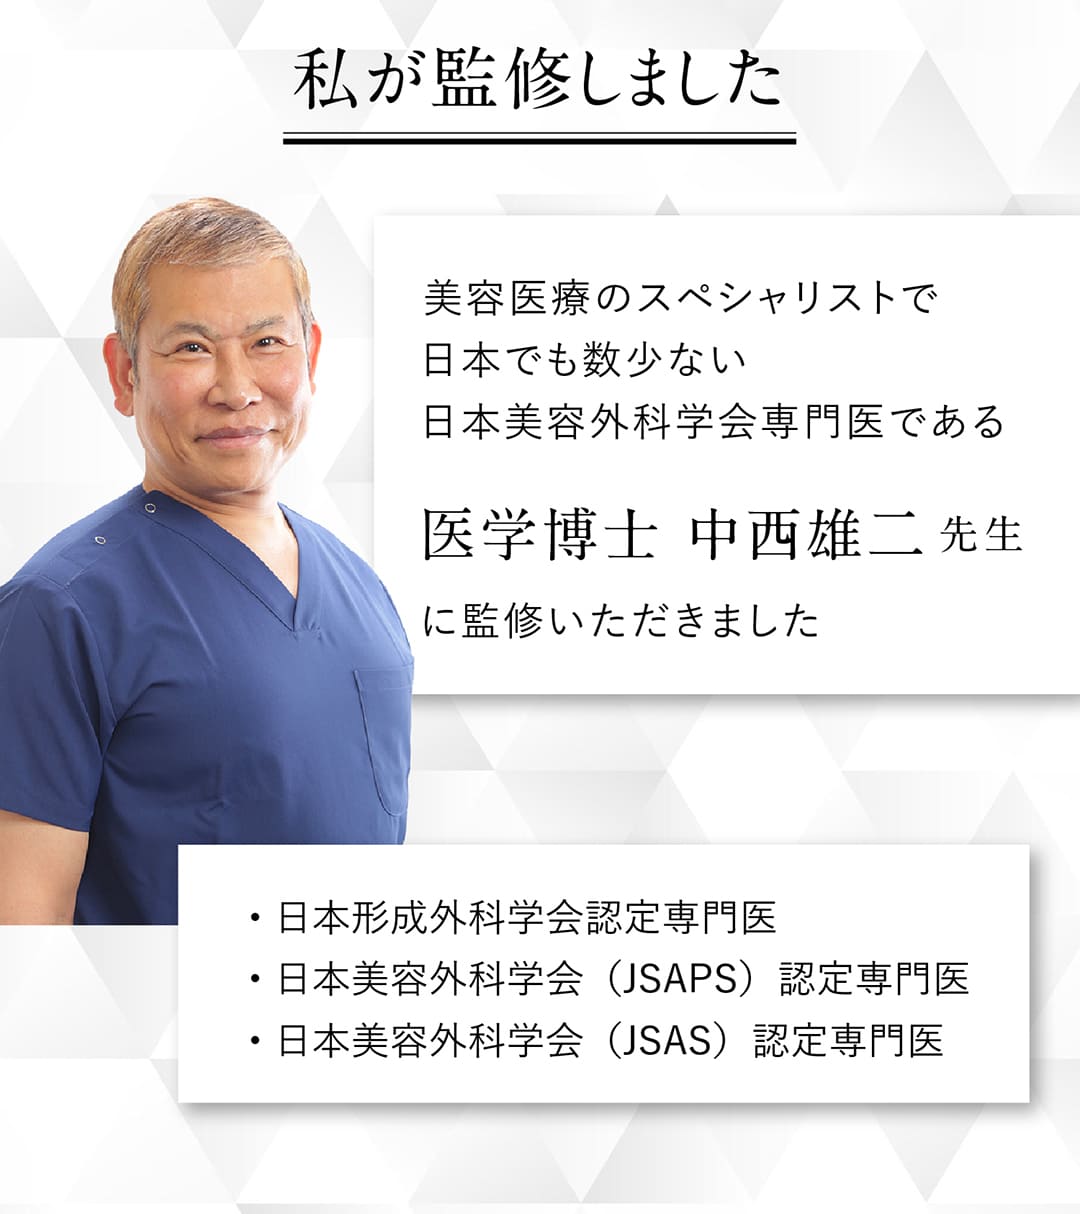 医学博士 中西雄二先生に監修いただきました